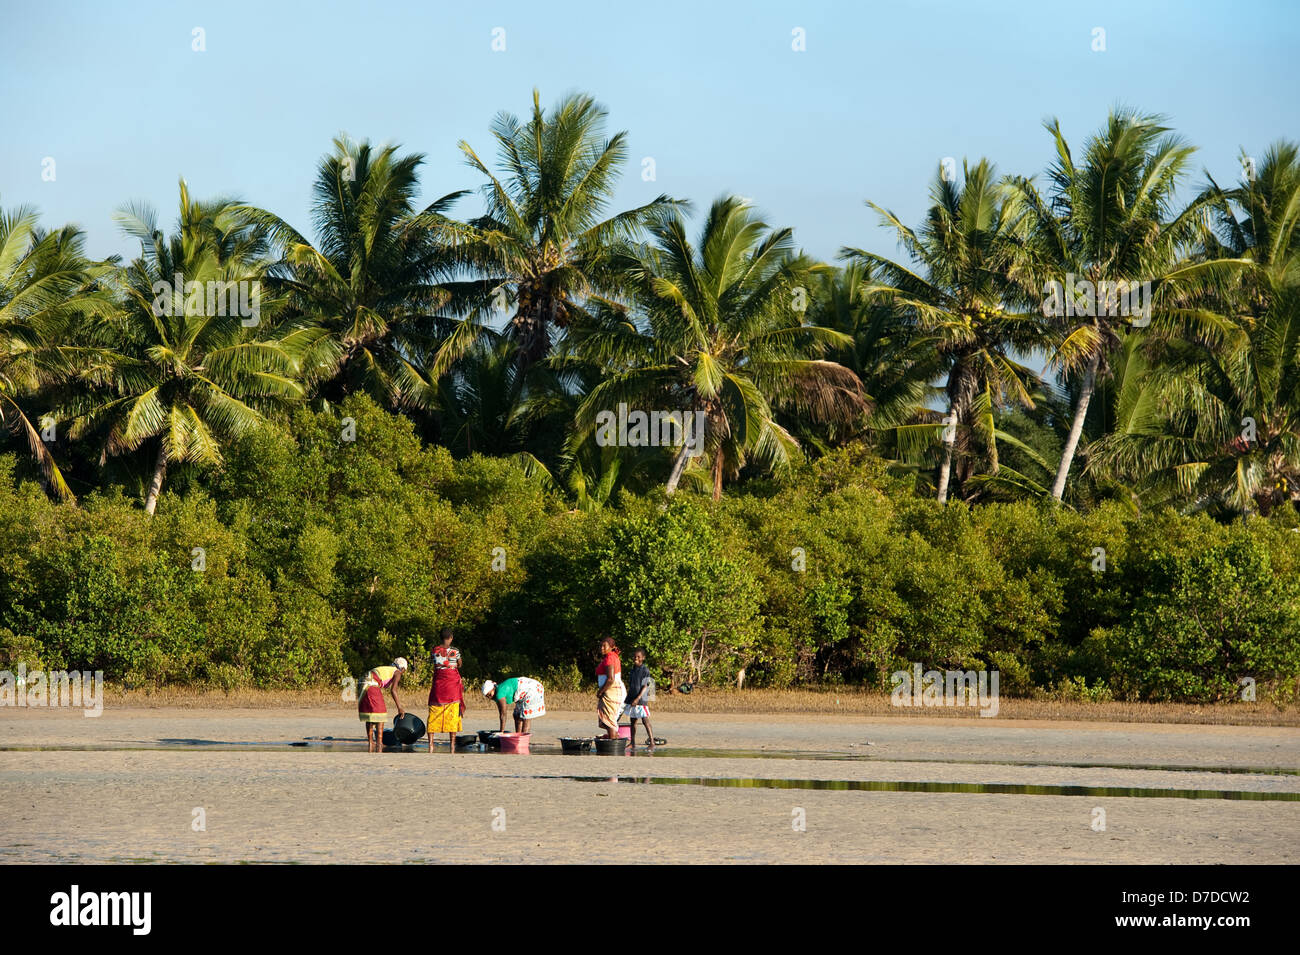 La gente di vendita del pesce sulla spiaggia, Vilanculos, Mozambico Foto Stock